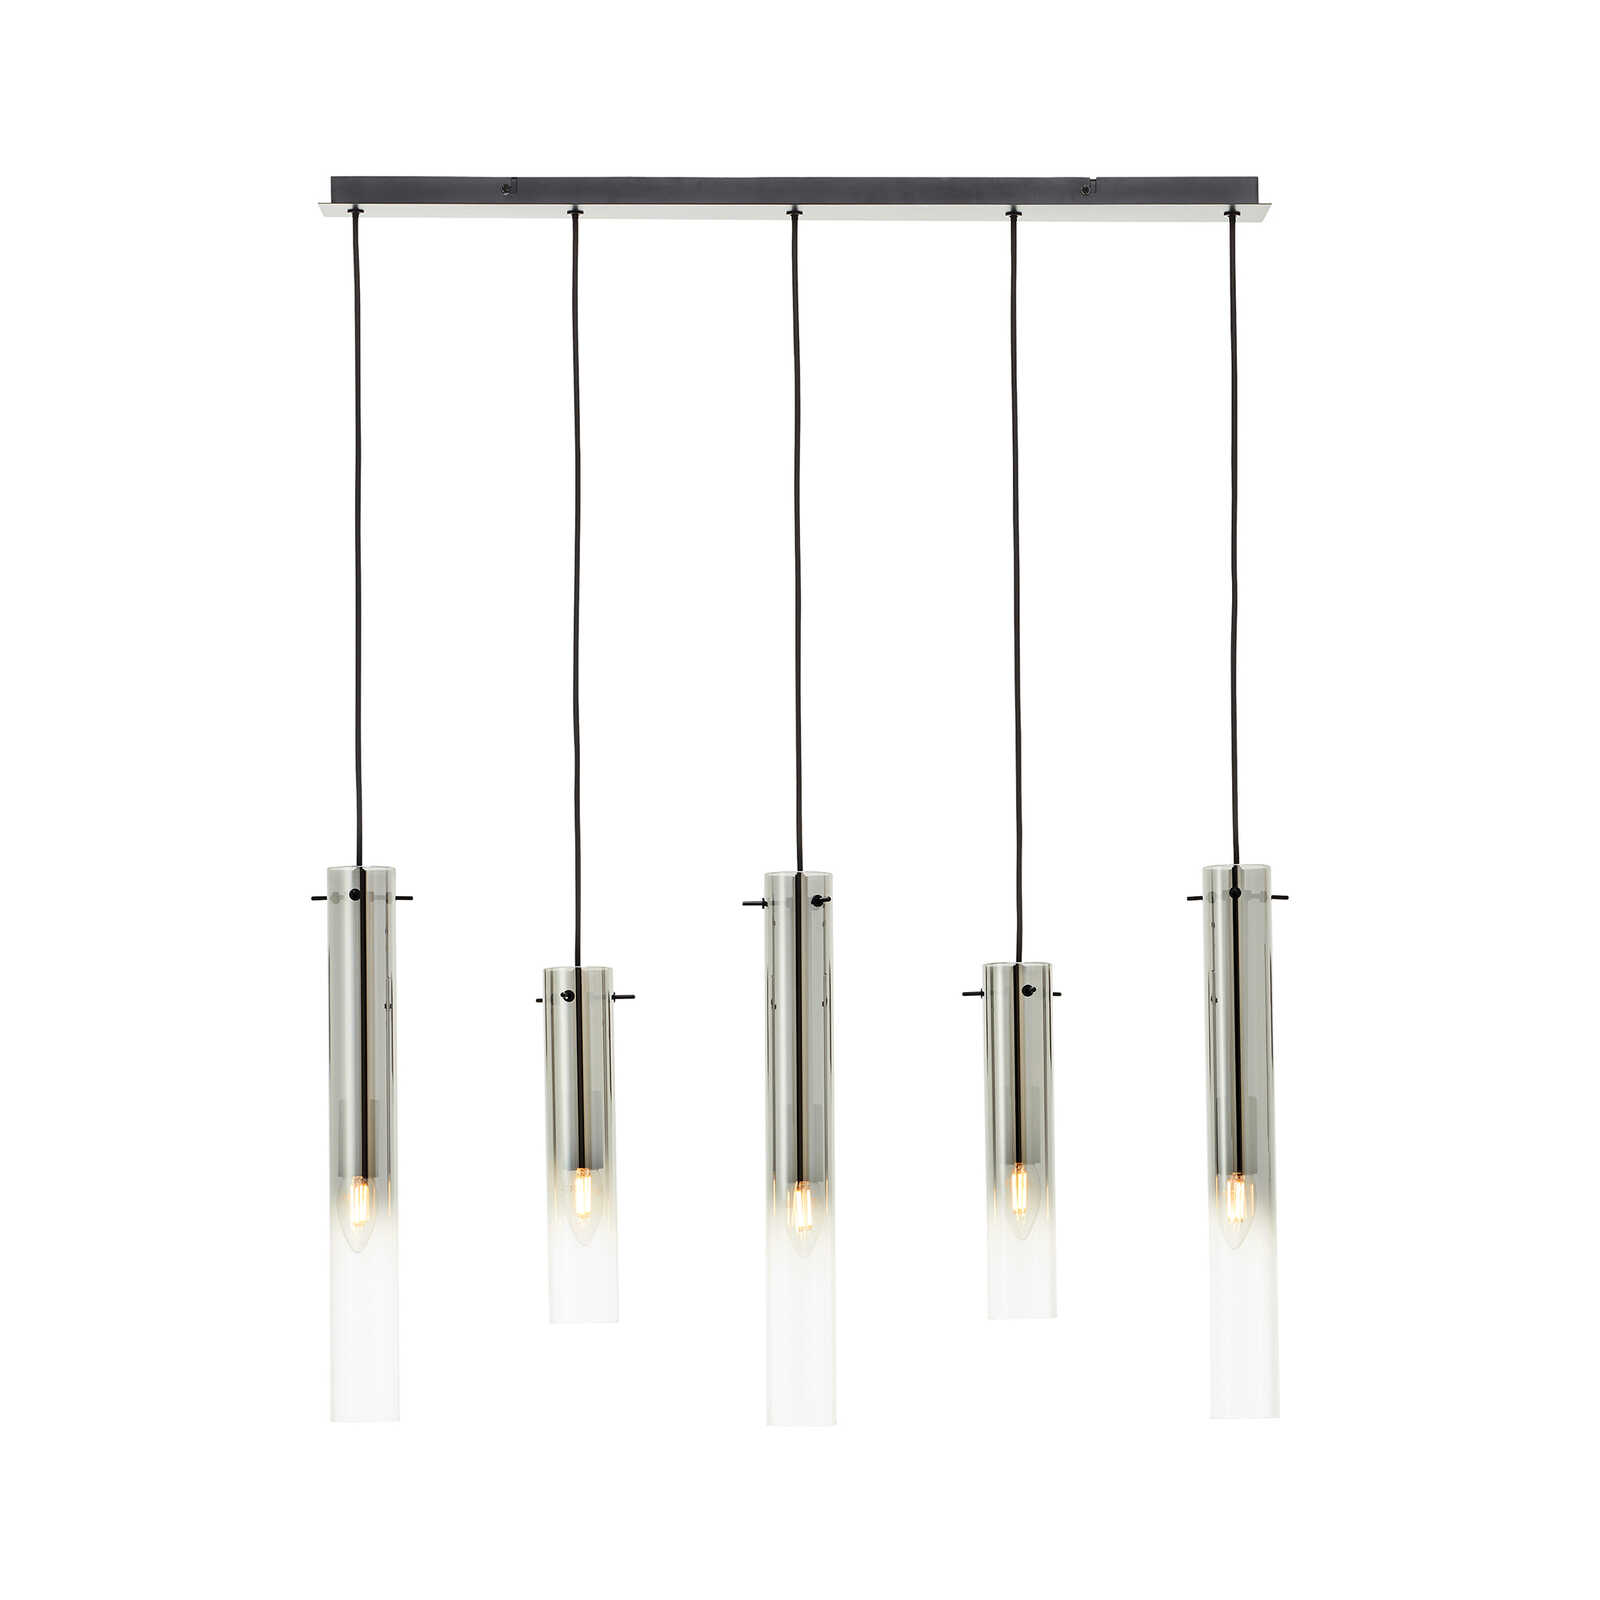 Metalen hanglamp - Hilla 1 - Grijs
